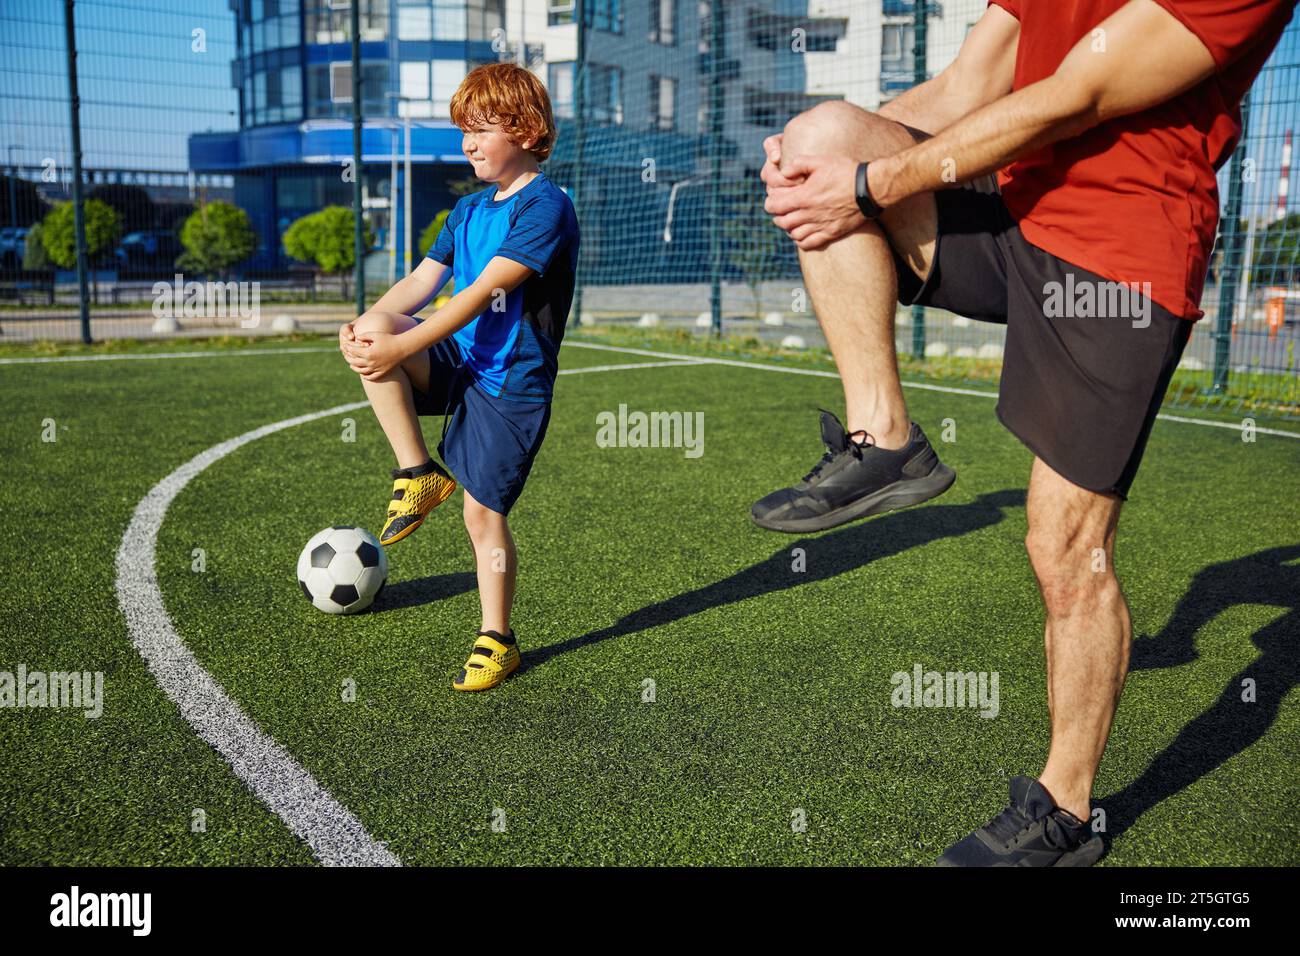 Papa et son fils font de l'entraînement physique et réchauffent les jambes avant l'entraînement de football Banque D'Images